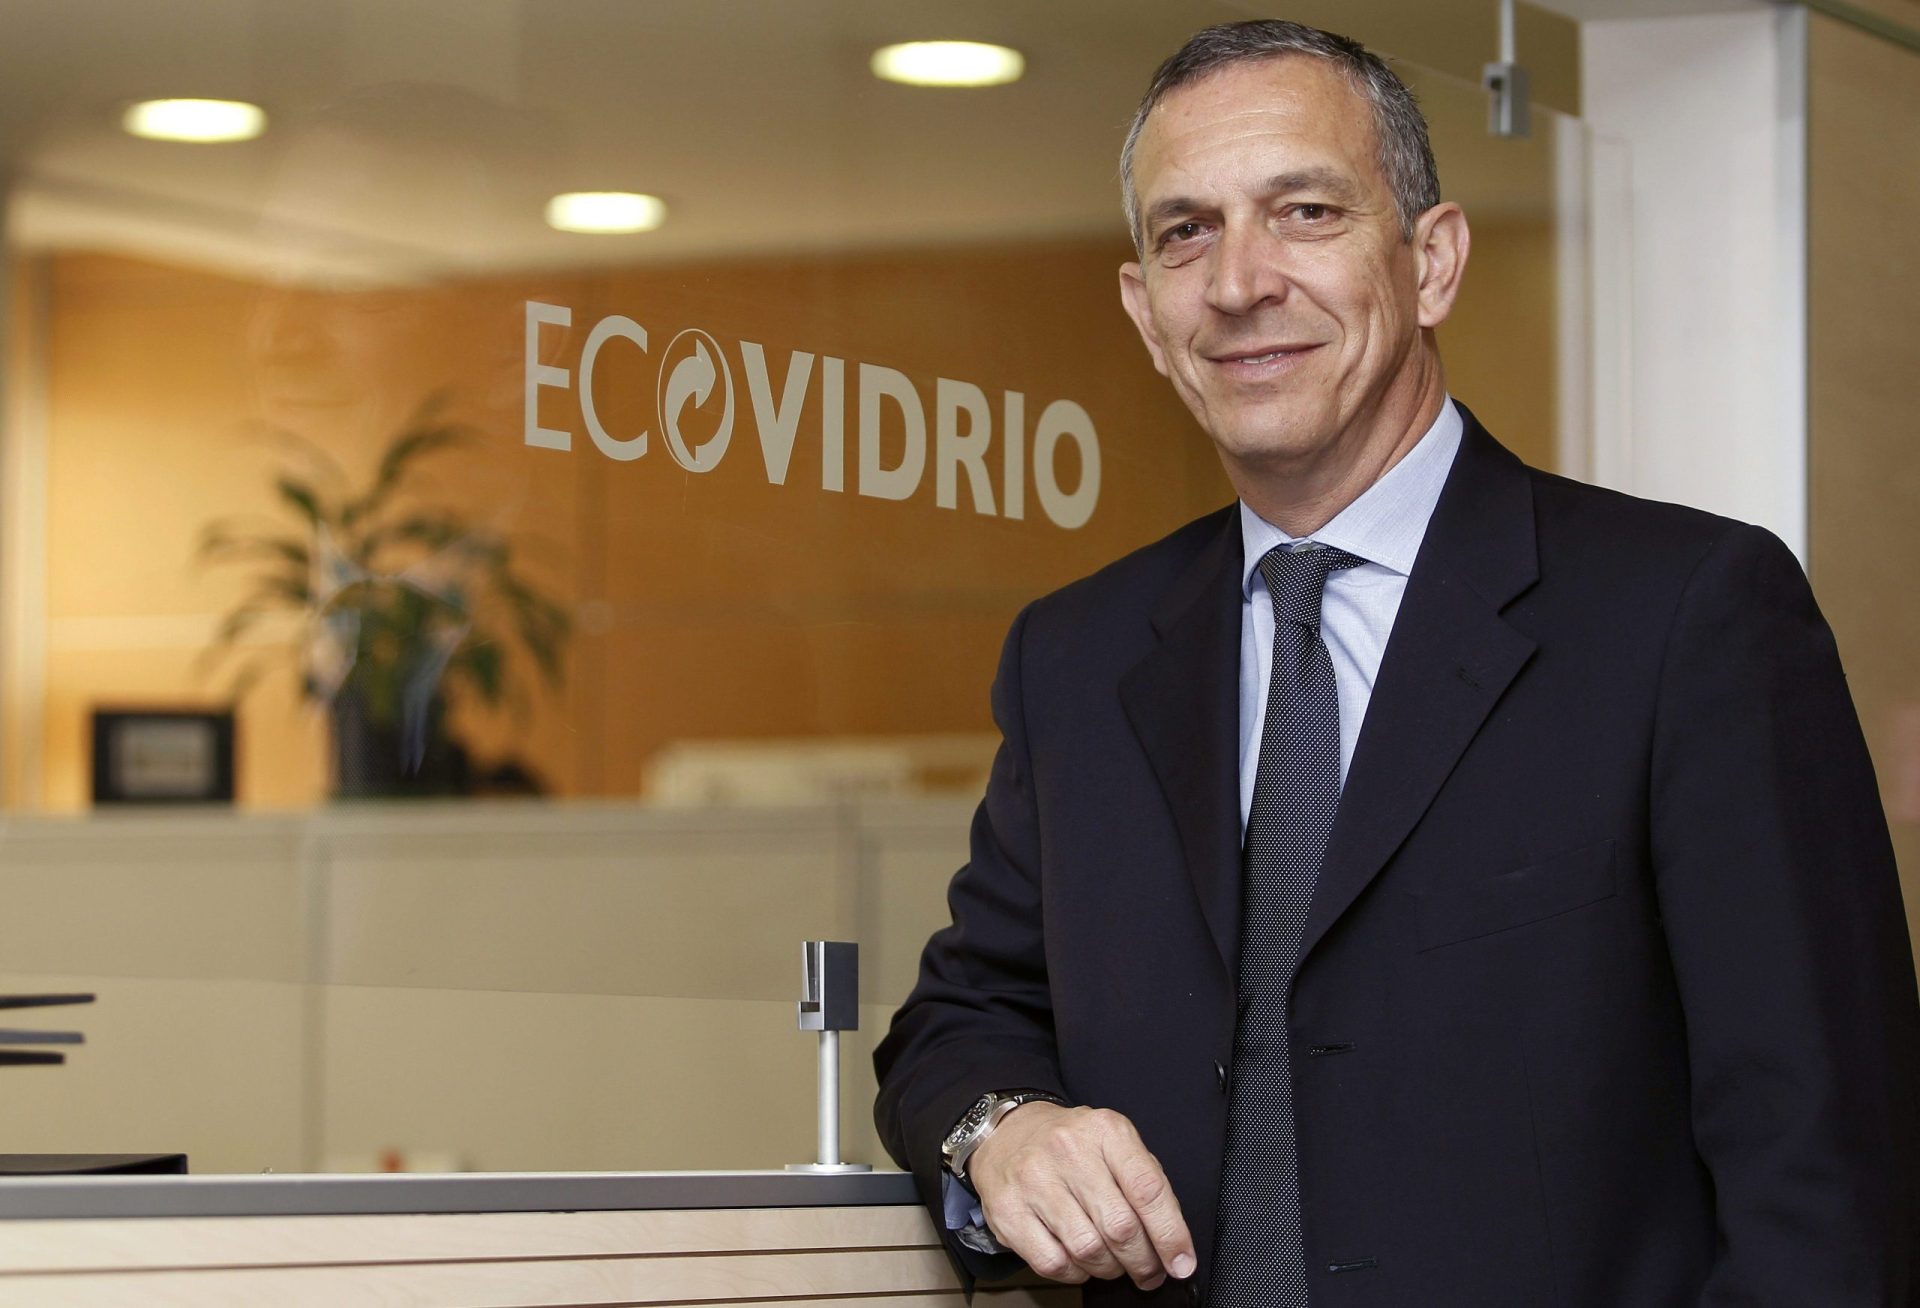 José Manuel Núñez-Lagos Bau director general de Ecovidrio, una asociación sin animo de lucro encargada de gestionar la recogida selectiva de envases de vidrio mediante la instalación de contenedores.EFEverde/SÓLO USO EDITORIAL